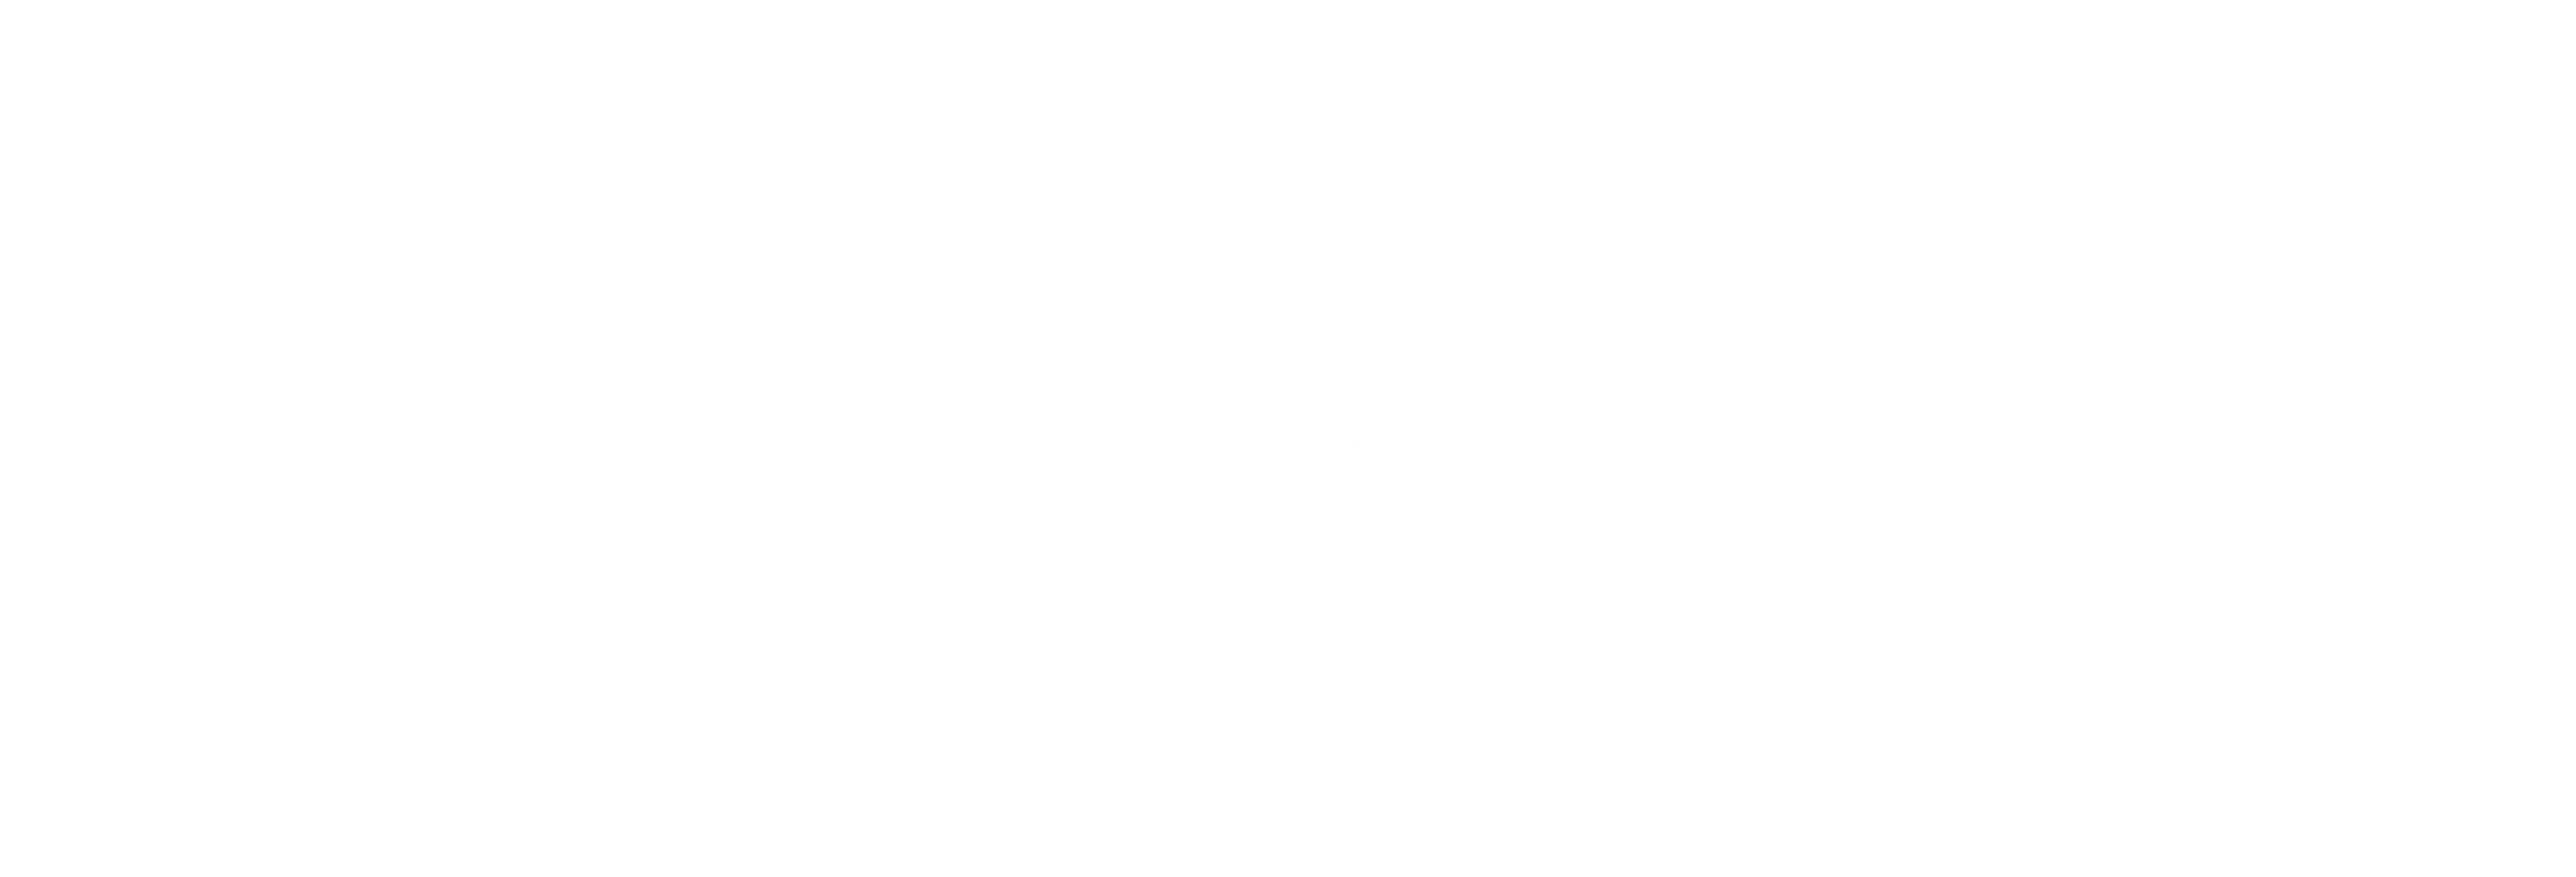 Masch Guitars